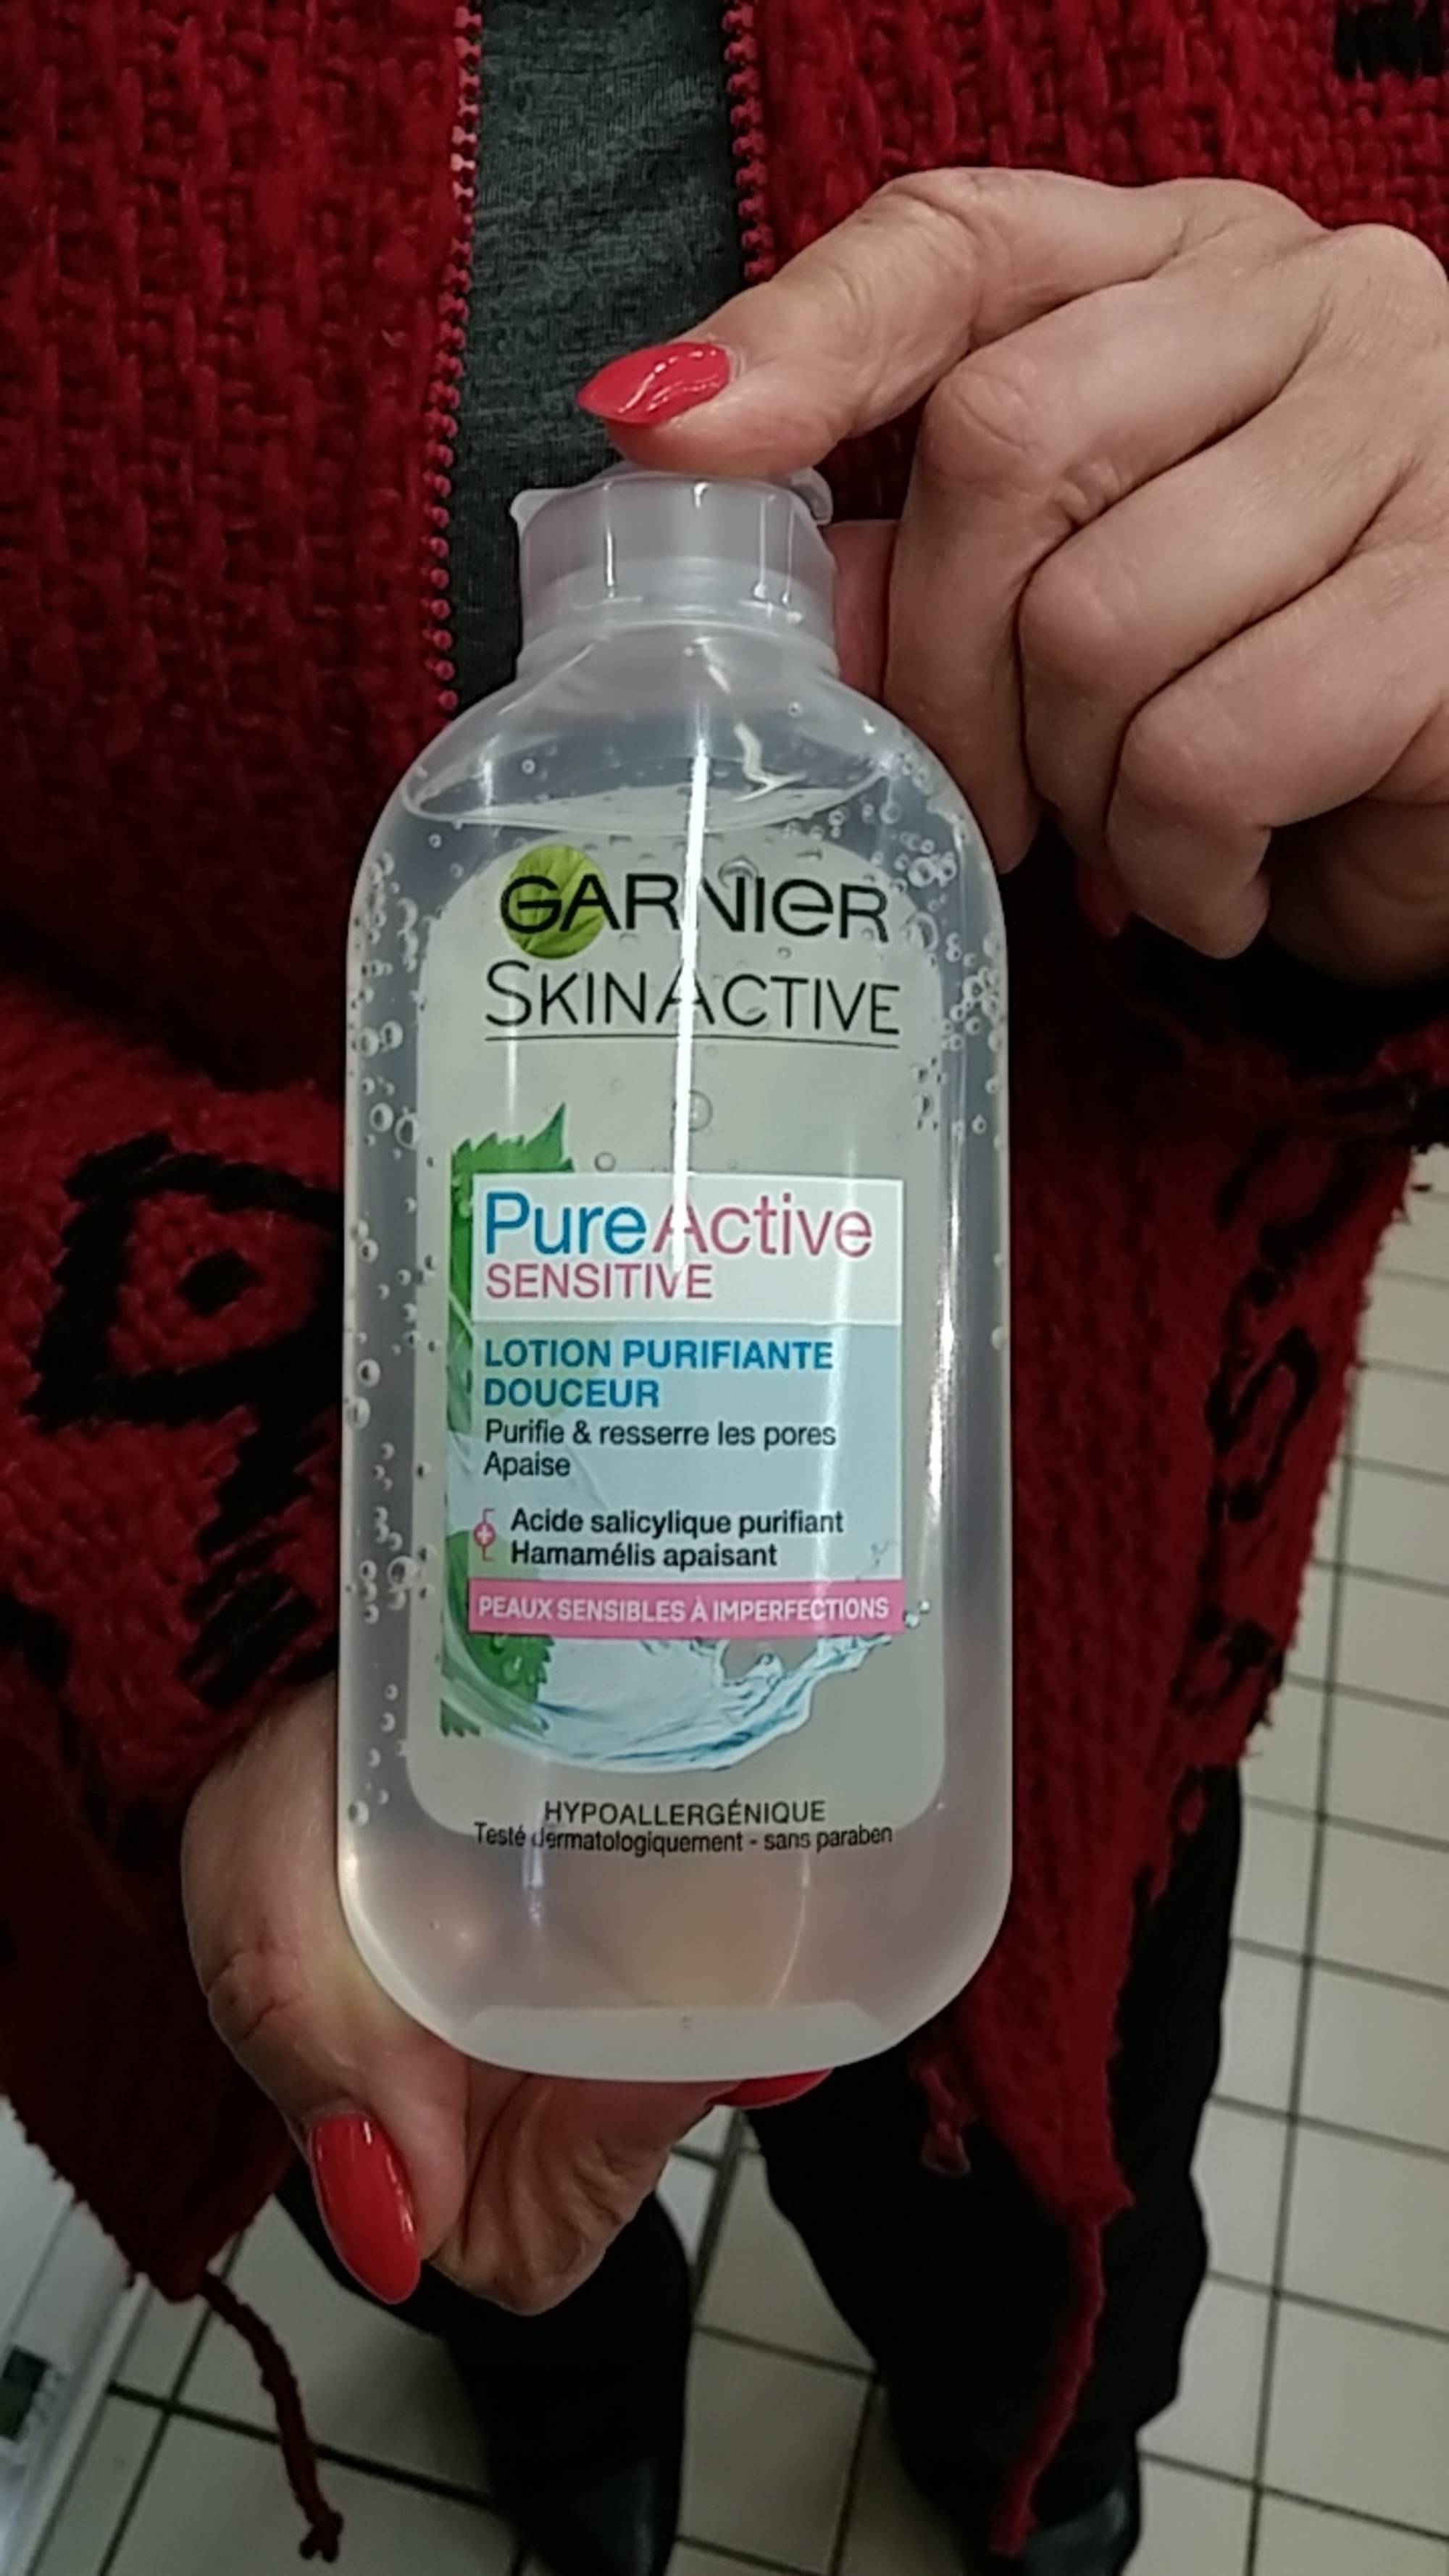 GARNIER - Skinactive - Pure active sensitive lotion purifiante douceur